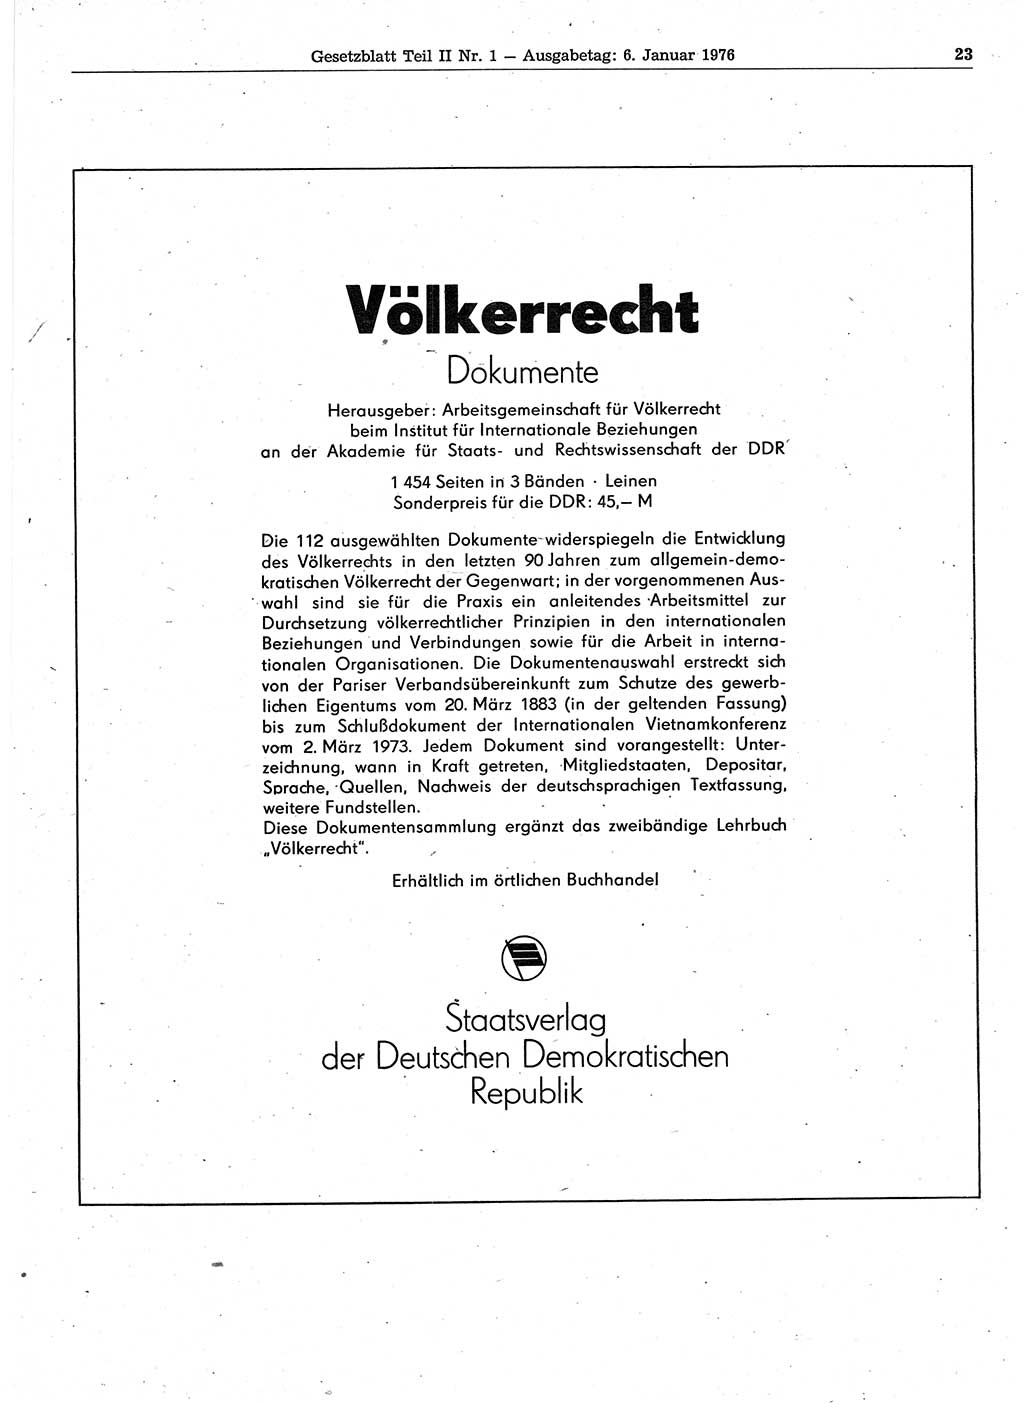 Gesetzblatt (GBl.) der Deutschen Demokratischen Republik (DDR) Teil ⅠⅠ 1976, Seite 23 (GBl. DDR ⅠⅠ 1976, S. 23)